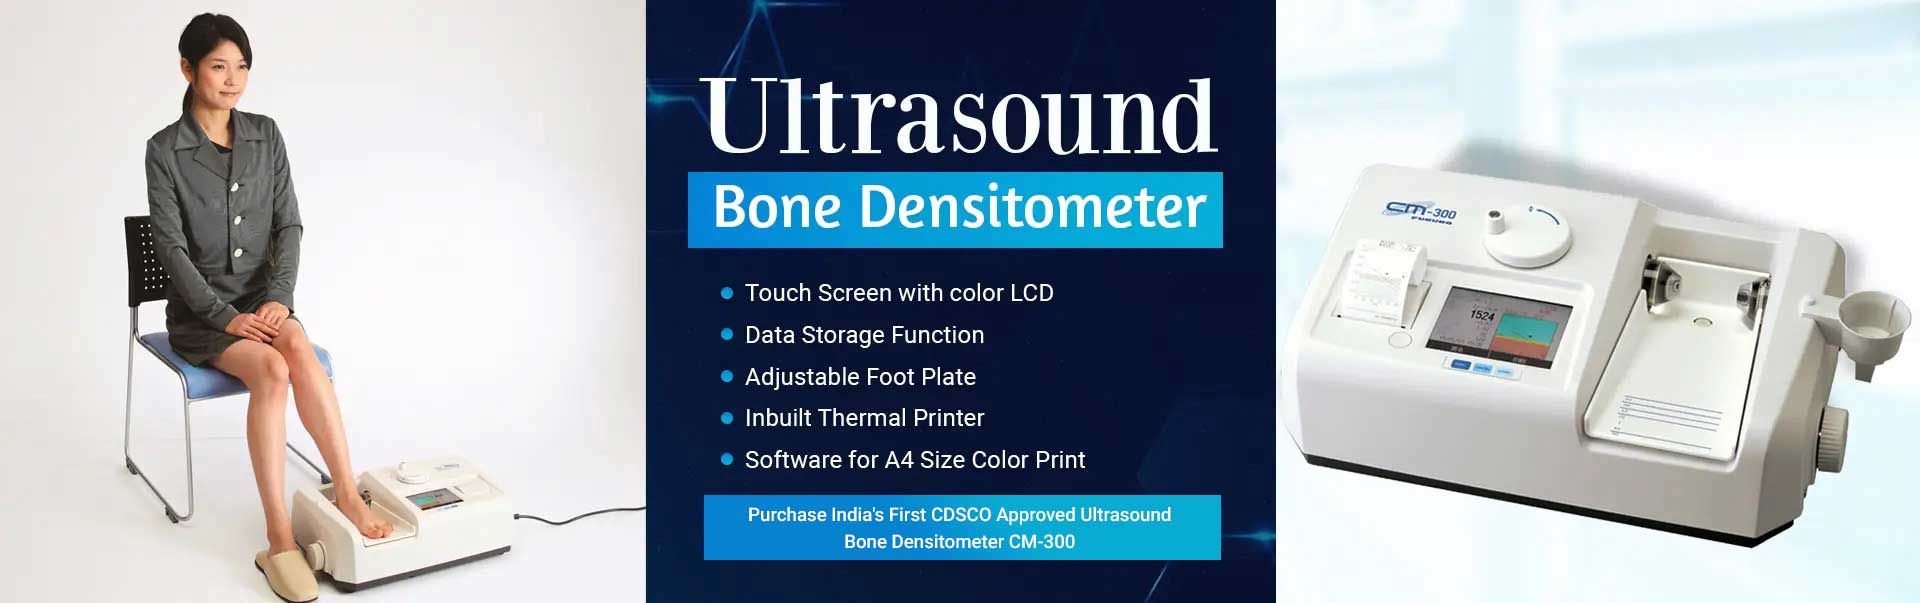 Ultrasound Bone Densitometer Manufacturers in Pondicherry